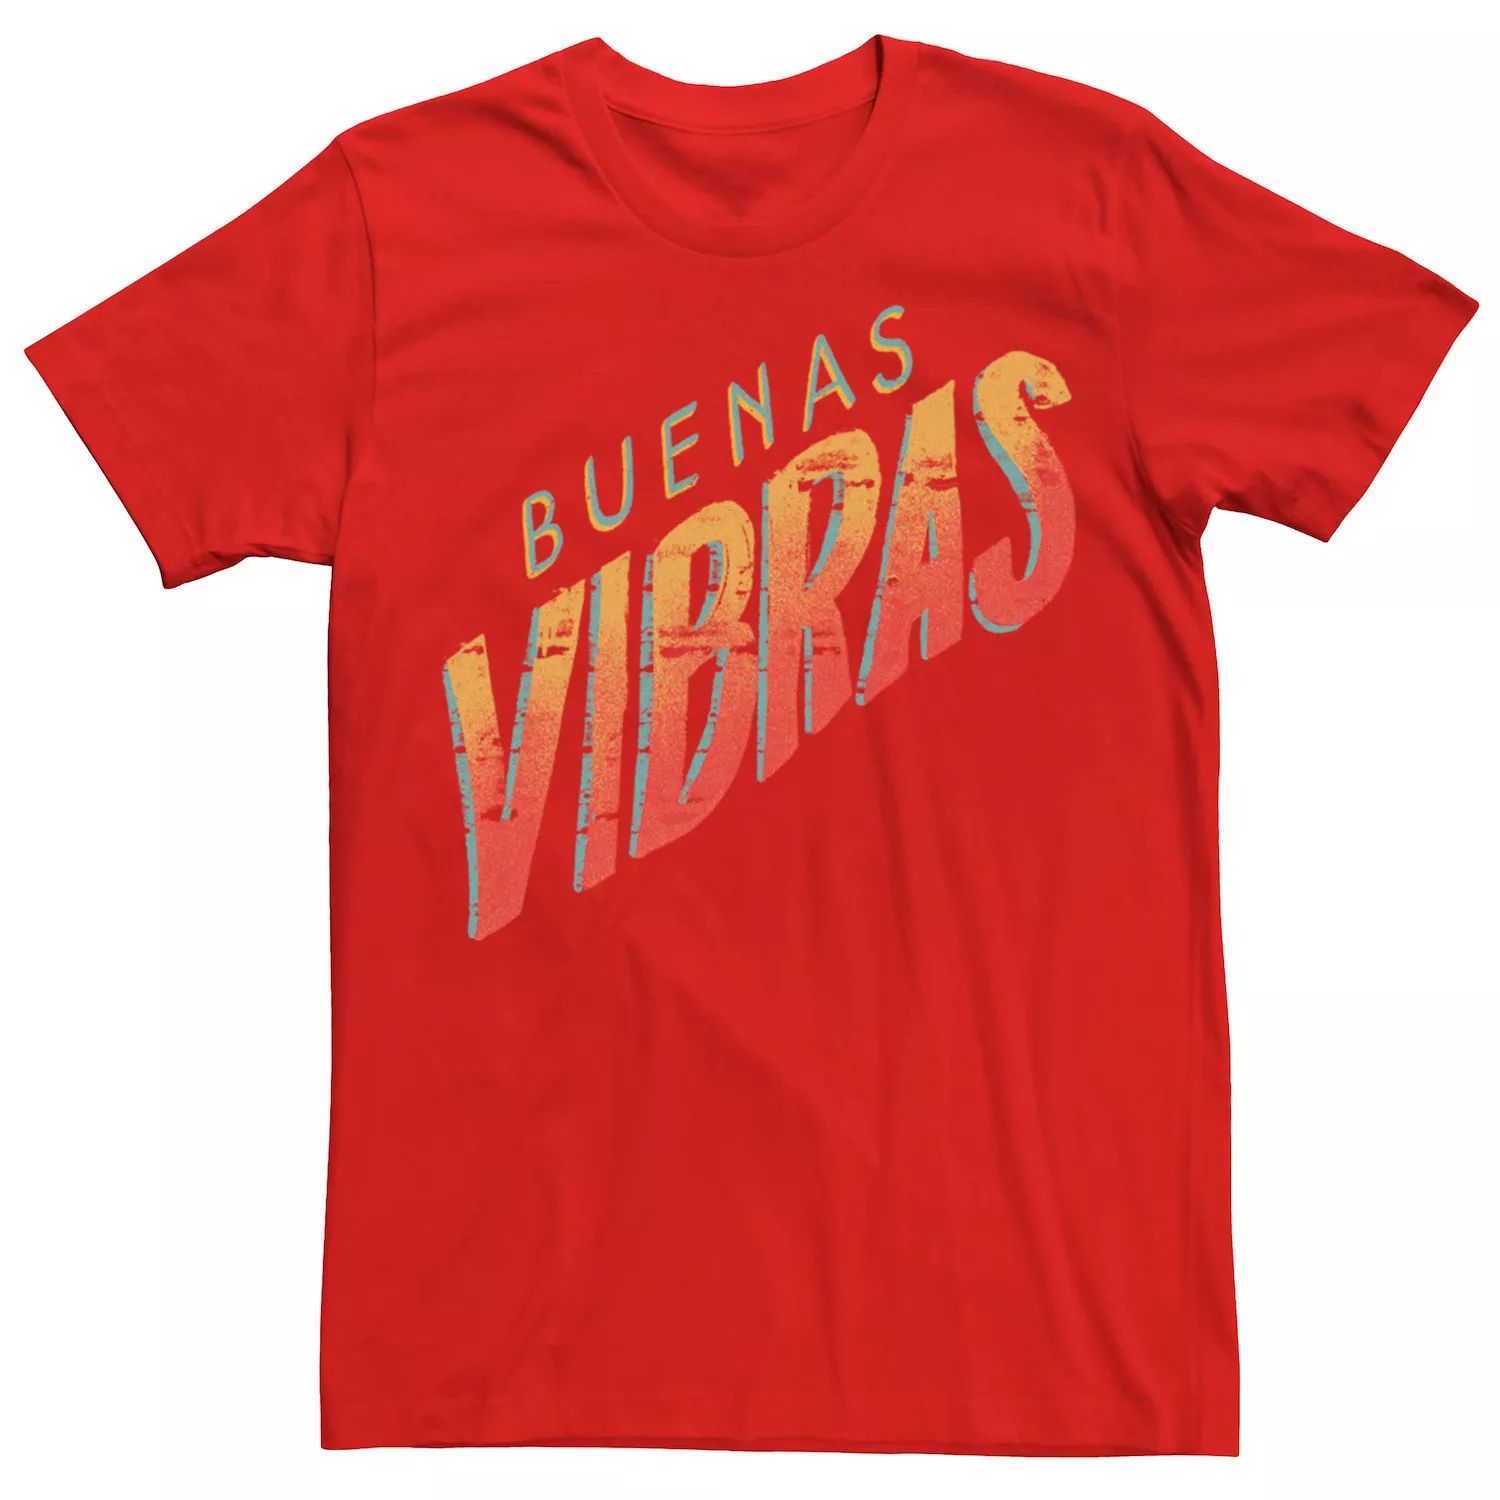 цена Мужская футболка Gonzales Buenas Vibras оранжевого цвета с надписью Licensed Character